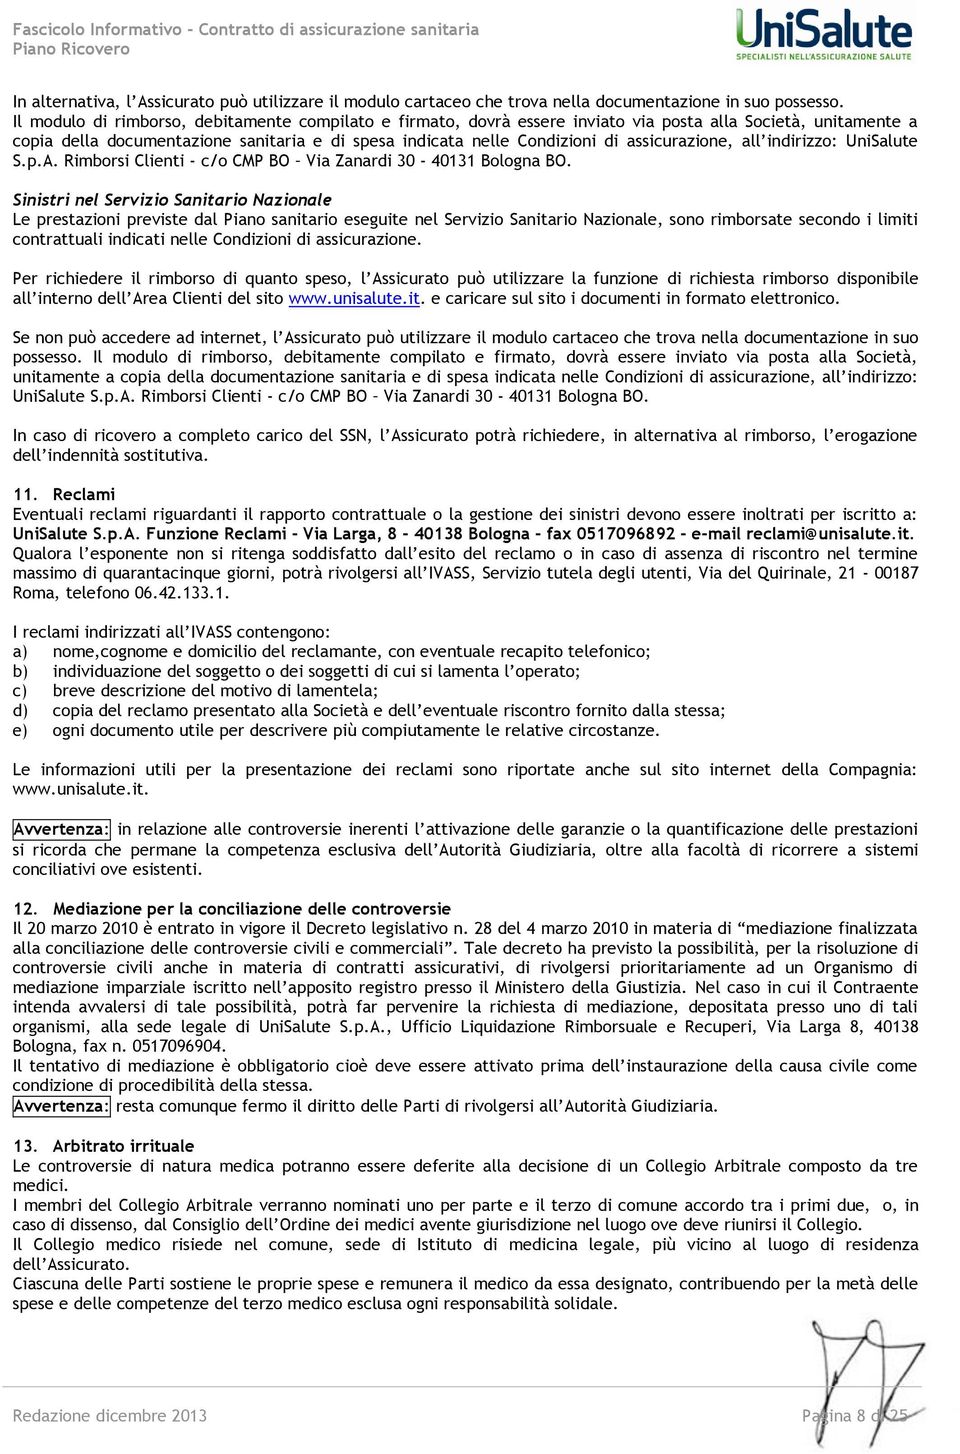 assicurazione, all indirizzo: UniSalute S.p.A. Rimborsi Clienti - c/o CMP BO Via Zanardi 30-40131 Bologna BO.